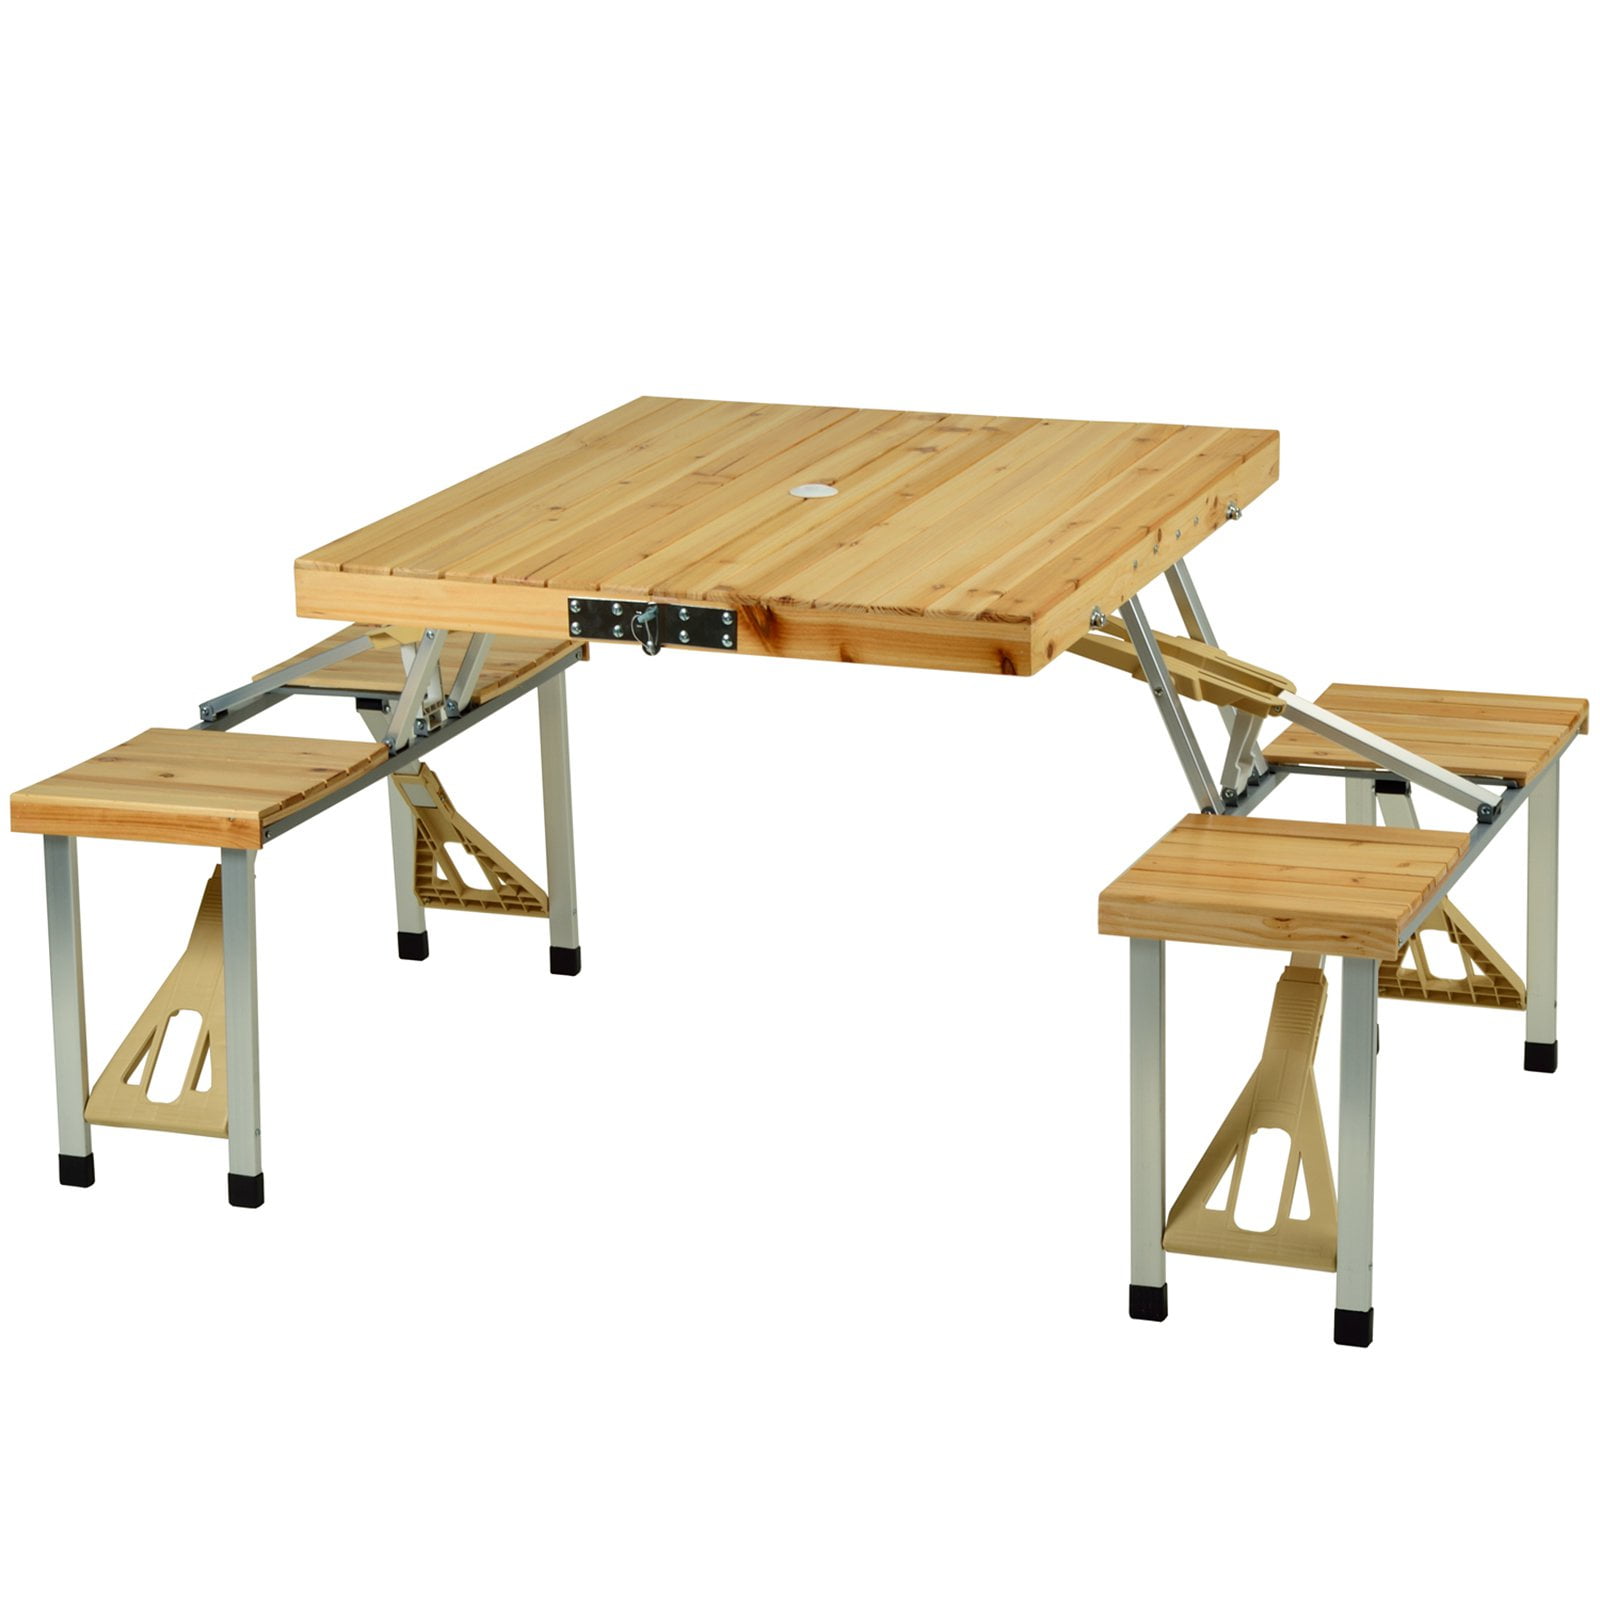 складной деревянный стол для пикника своими руками